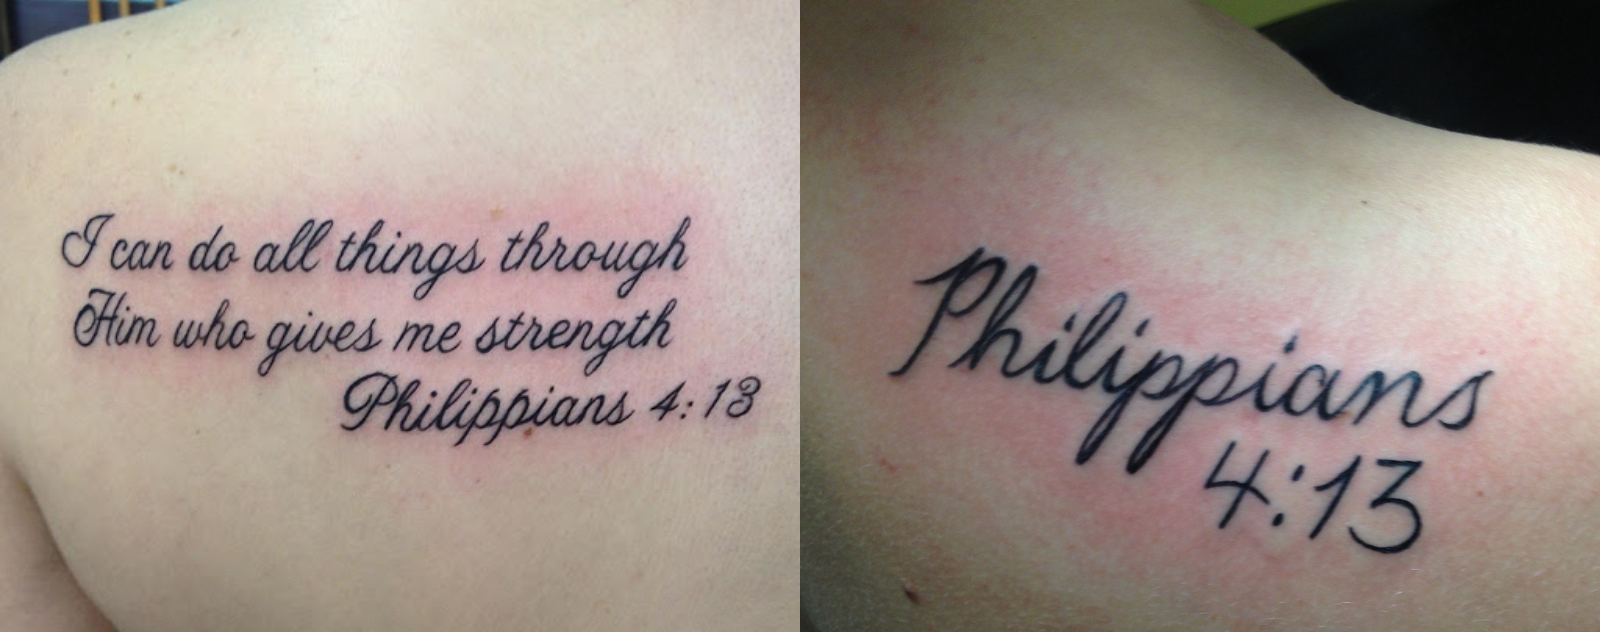 philippians-4-13-tattoo-shoulder-4